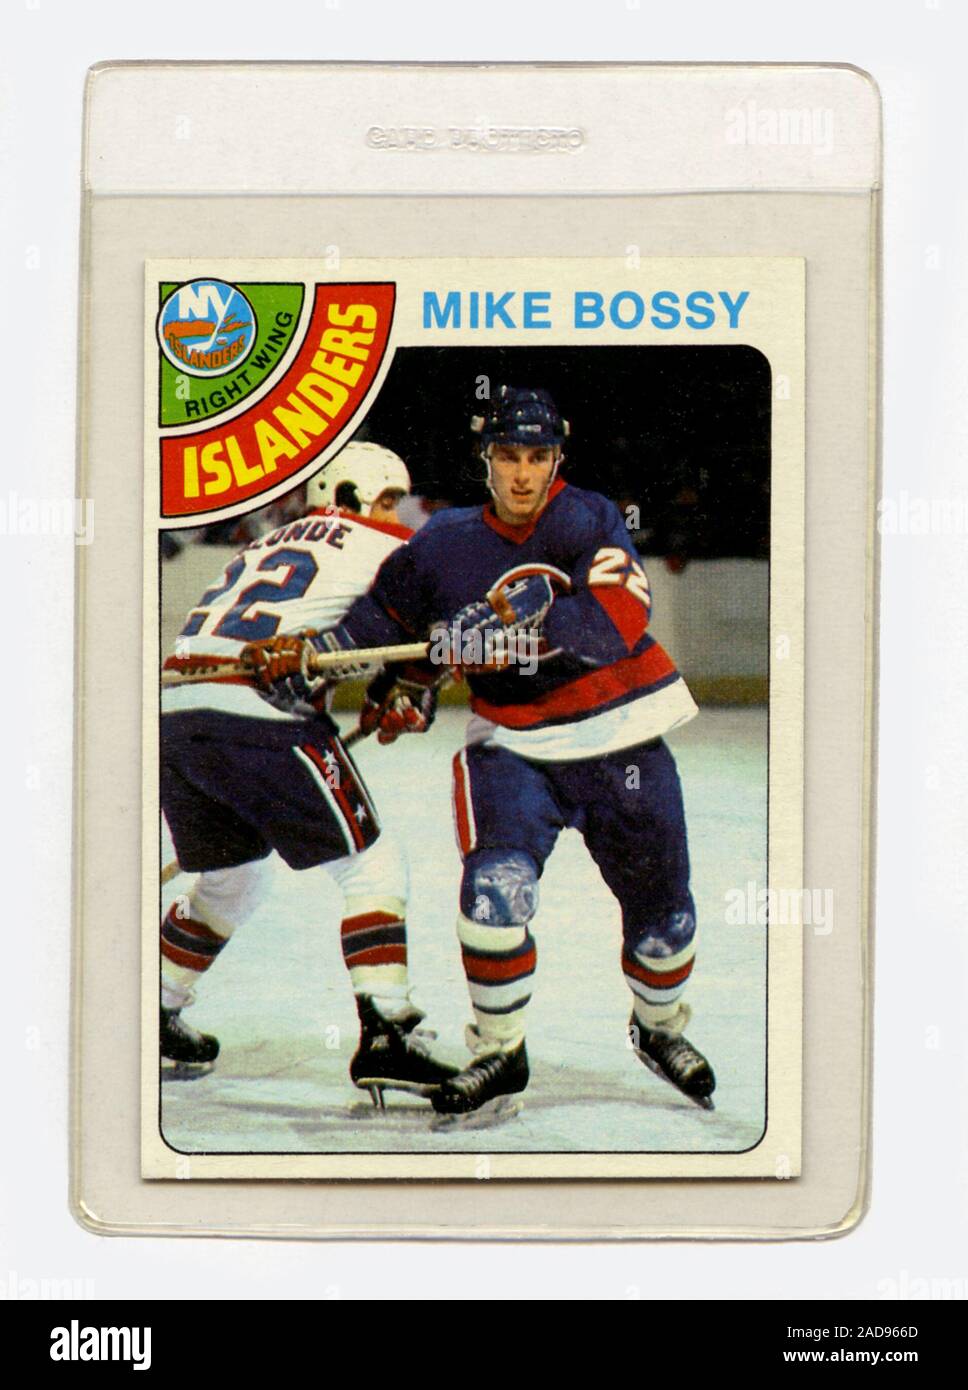 Vintage hockey su ghiaccio trading card di Mike Bossy dal suo rookie stagione di NHL con il New York isolani rilasciato da Topps per la stagione 1978/1979. Foto Stock